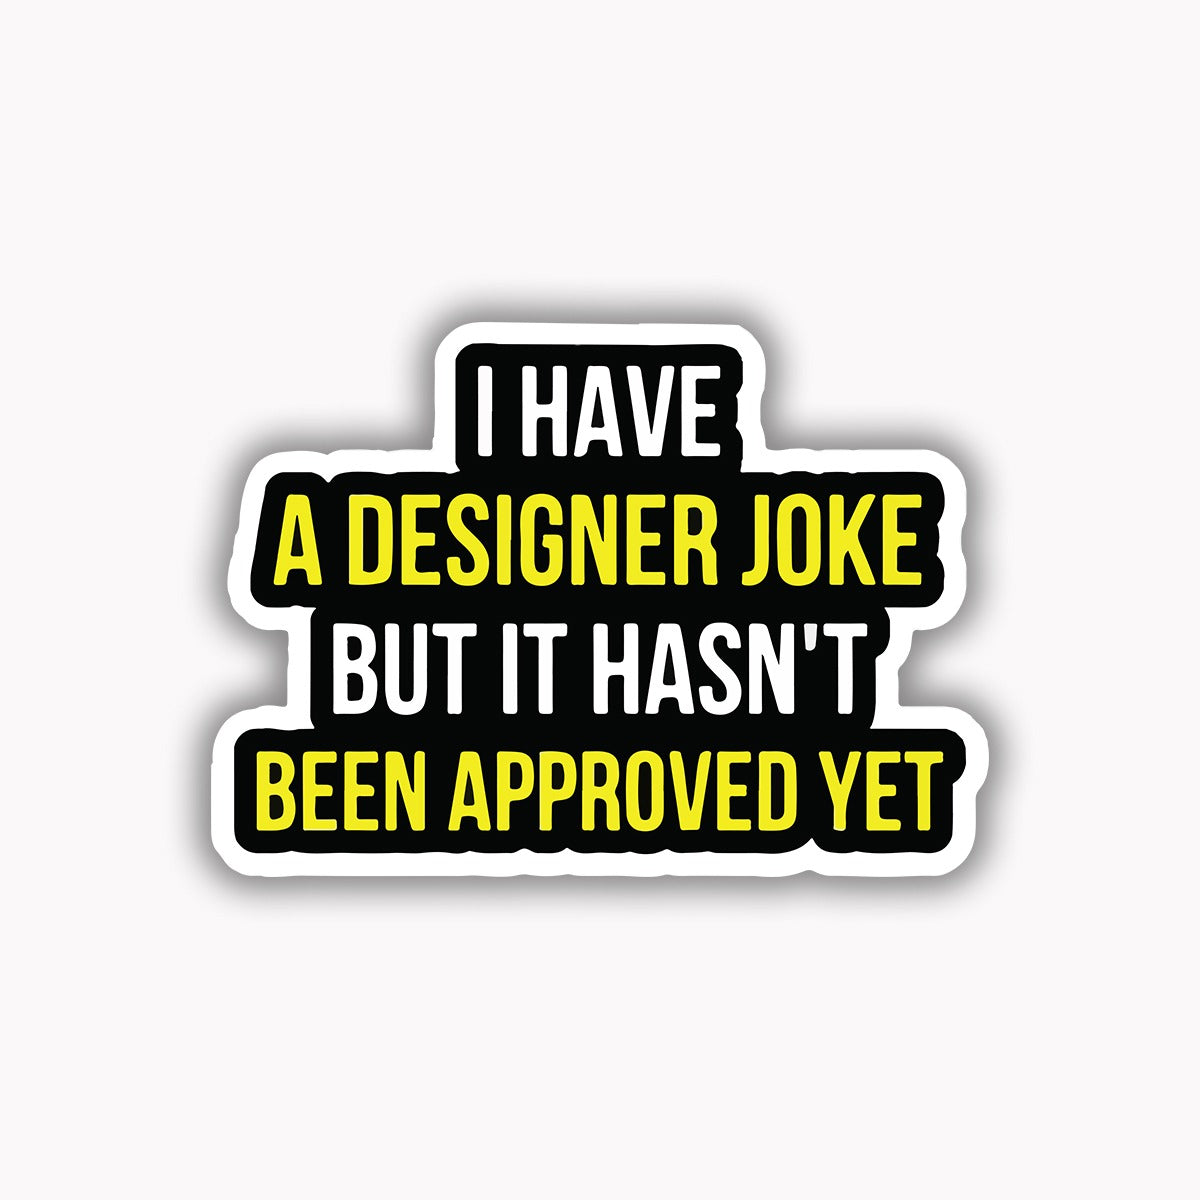 I have a designer joke